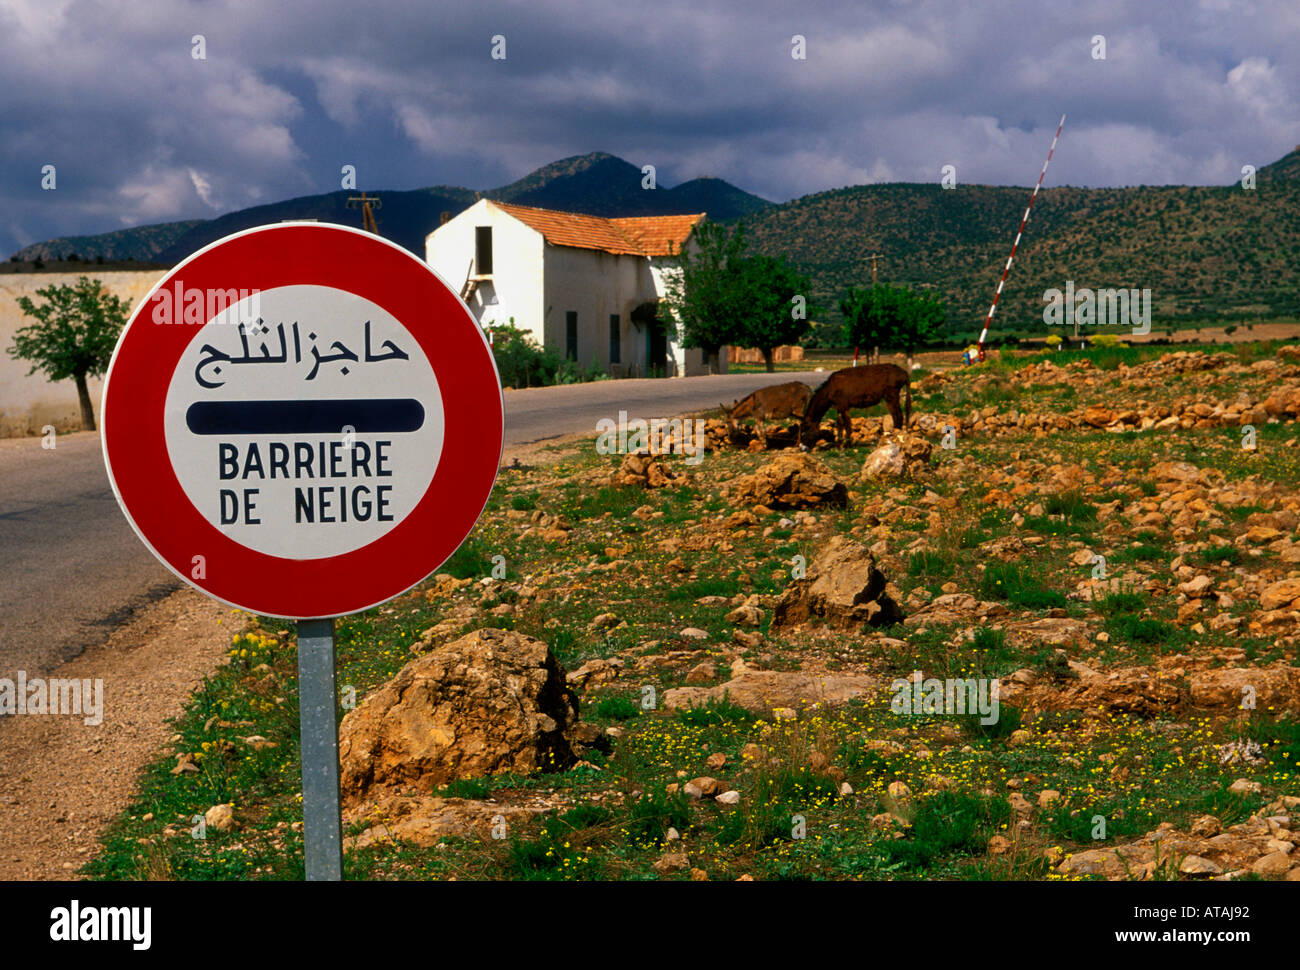 Bilingual cartello stradale, segno bilingue, cartello stradale, neve barriera, Barrière de neige, vicino al villaggio di Ait-ameur-ouabid, Marocco, Africa settentrionale, Africa Foto Stock